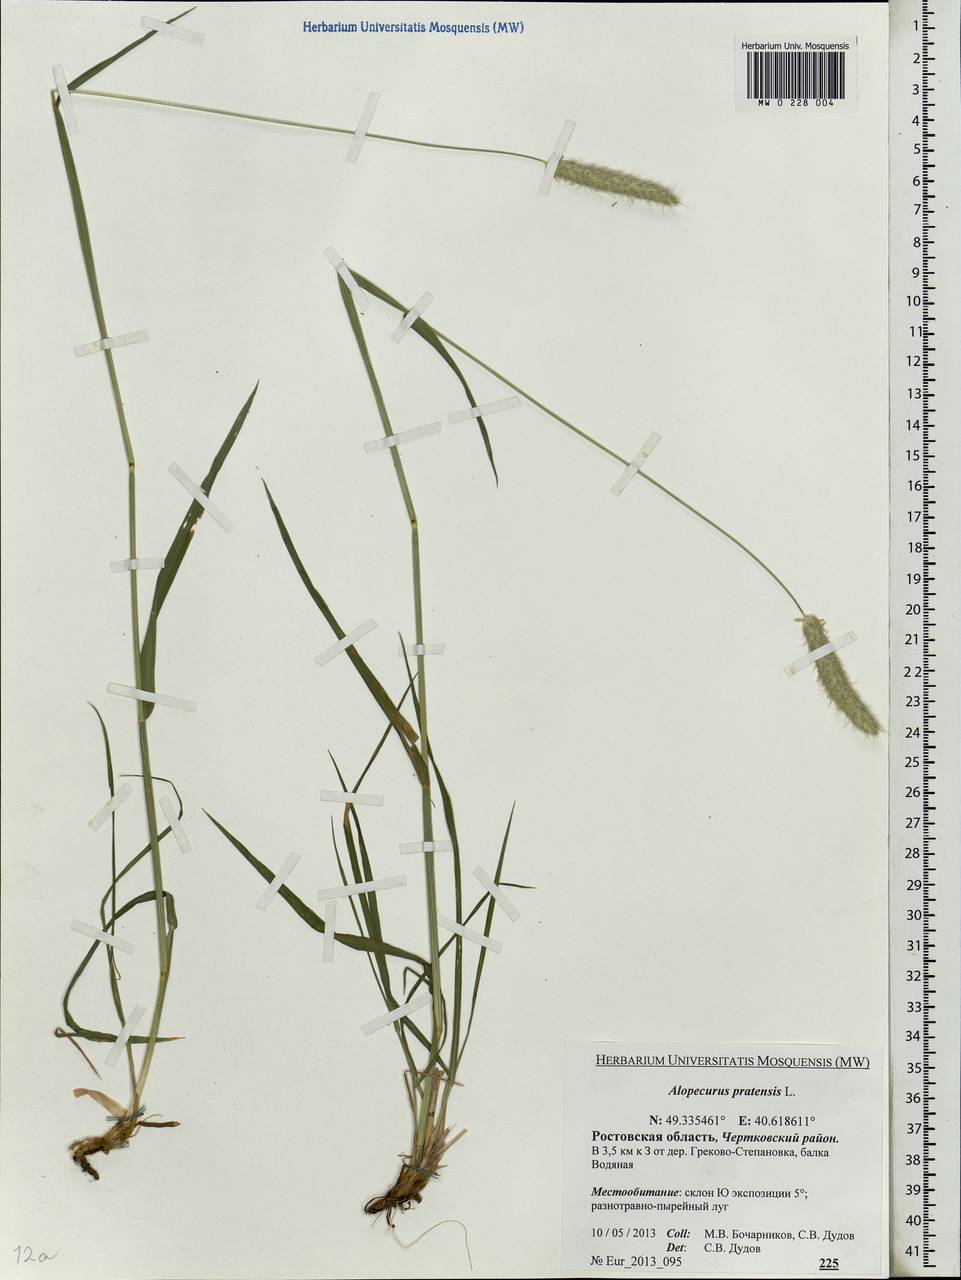 Alopecurus pratensis L., Eastern Europe, Rostov Oblast (E12a) (Russia)